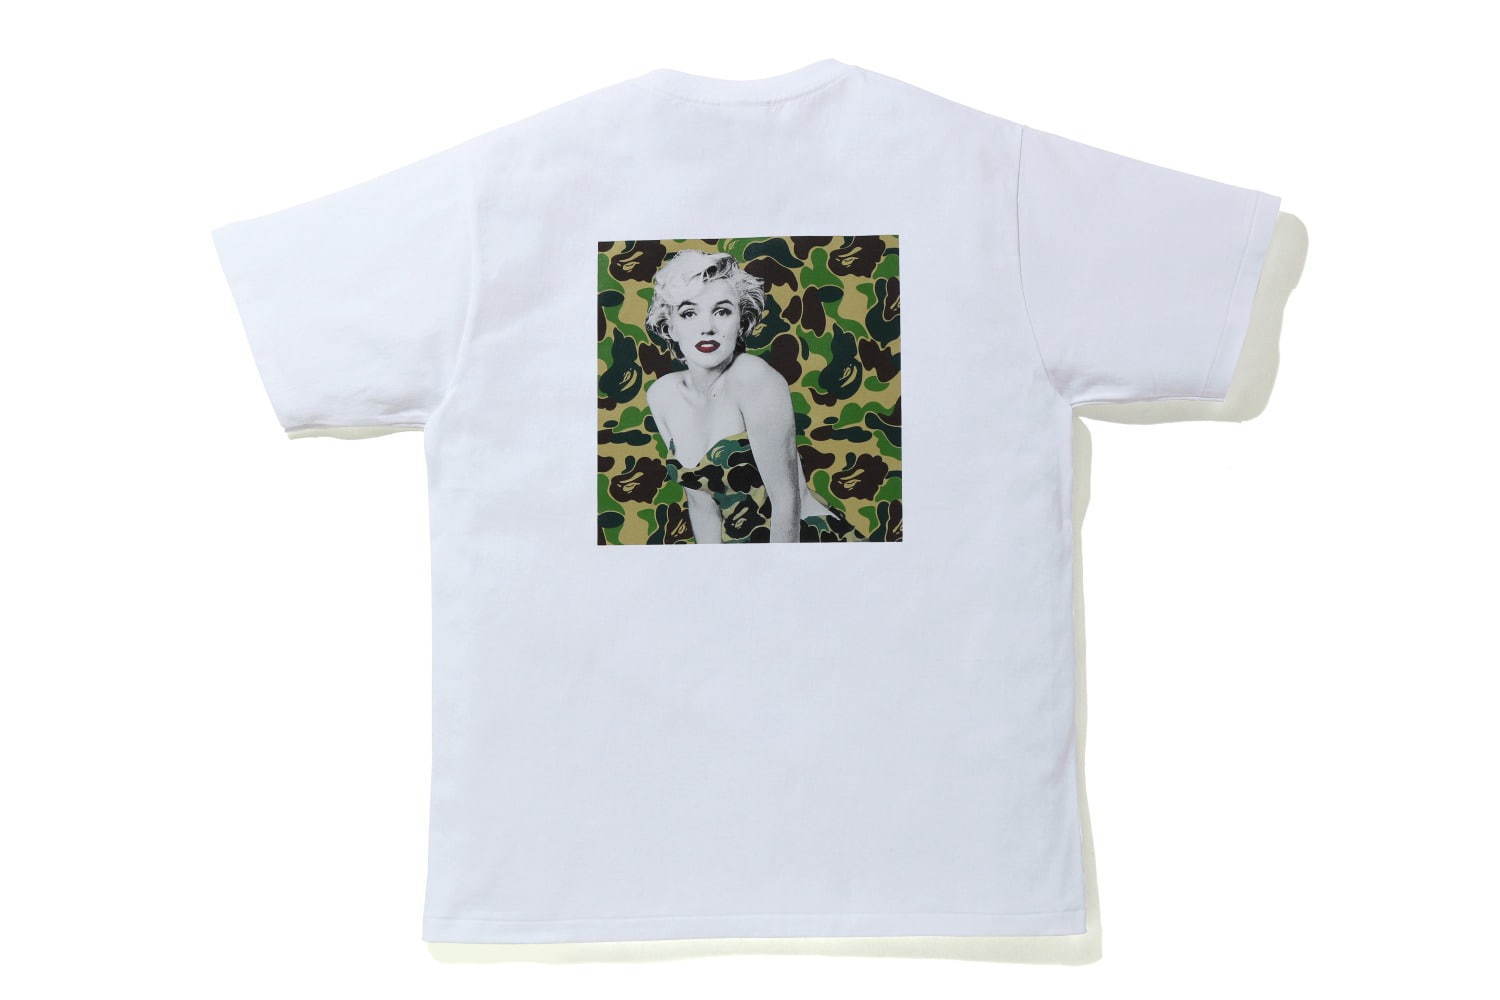 ベイプ マリリン モンローのコラボtシャツ ポートレート写真にカモ柄をコラージュ ファッションプレス